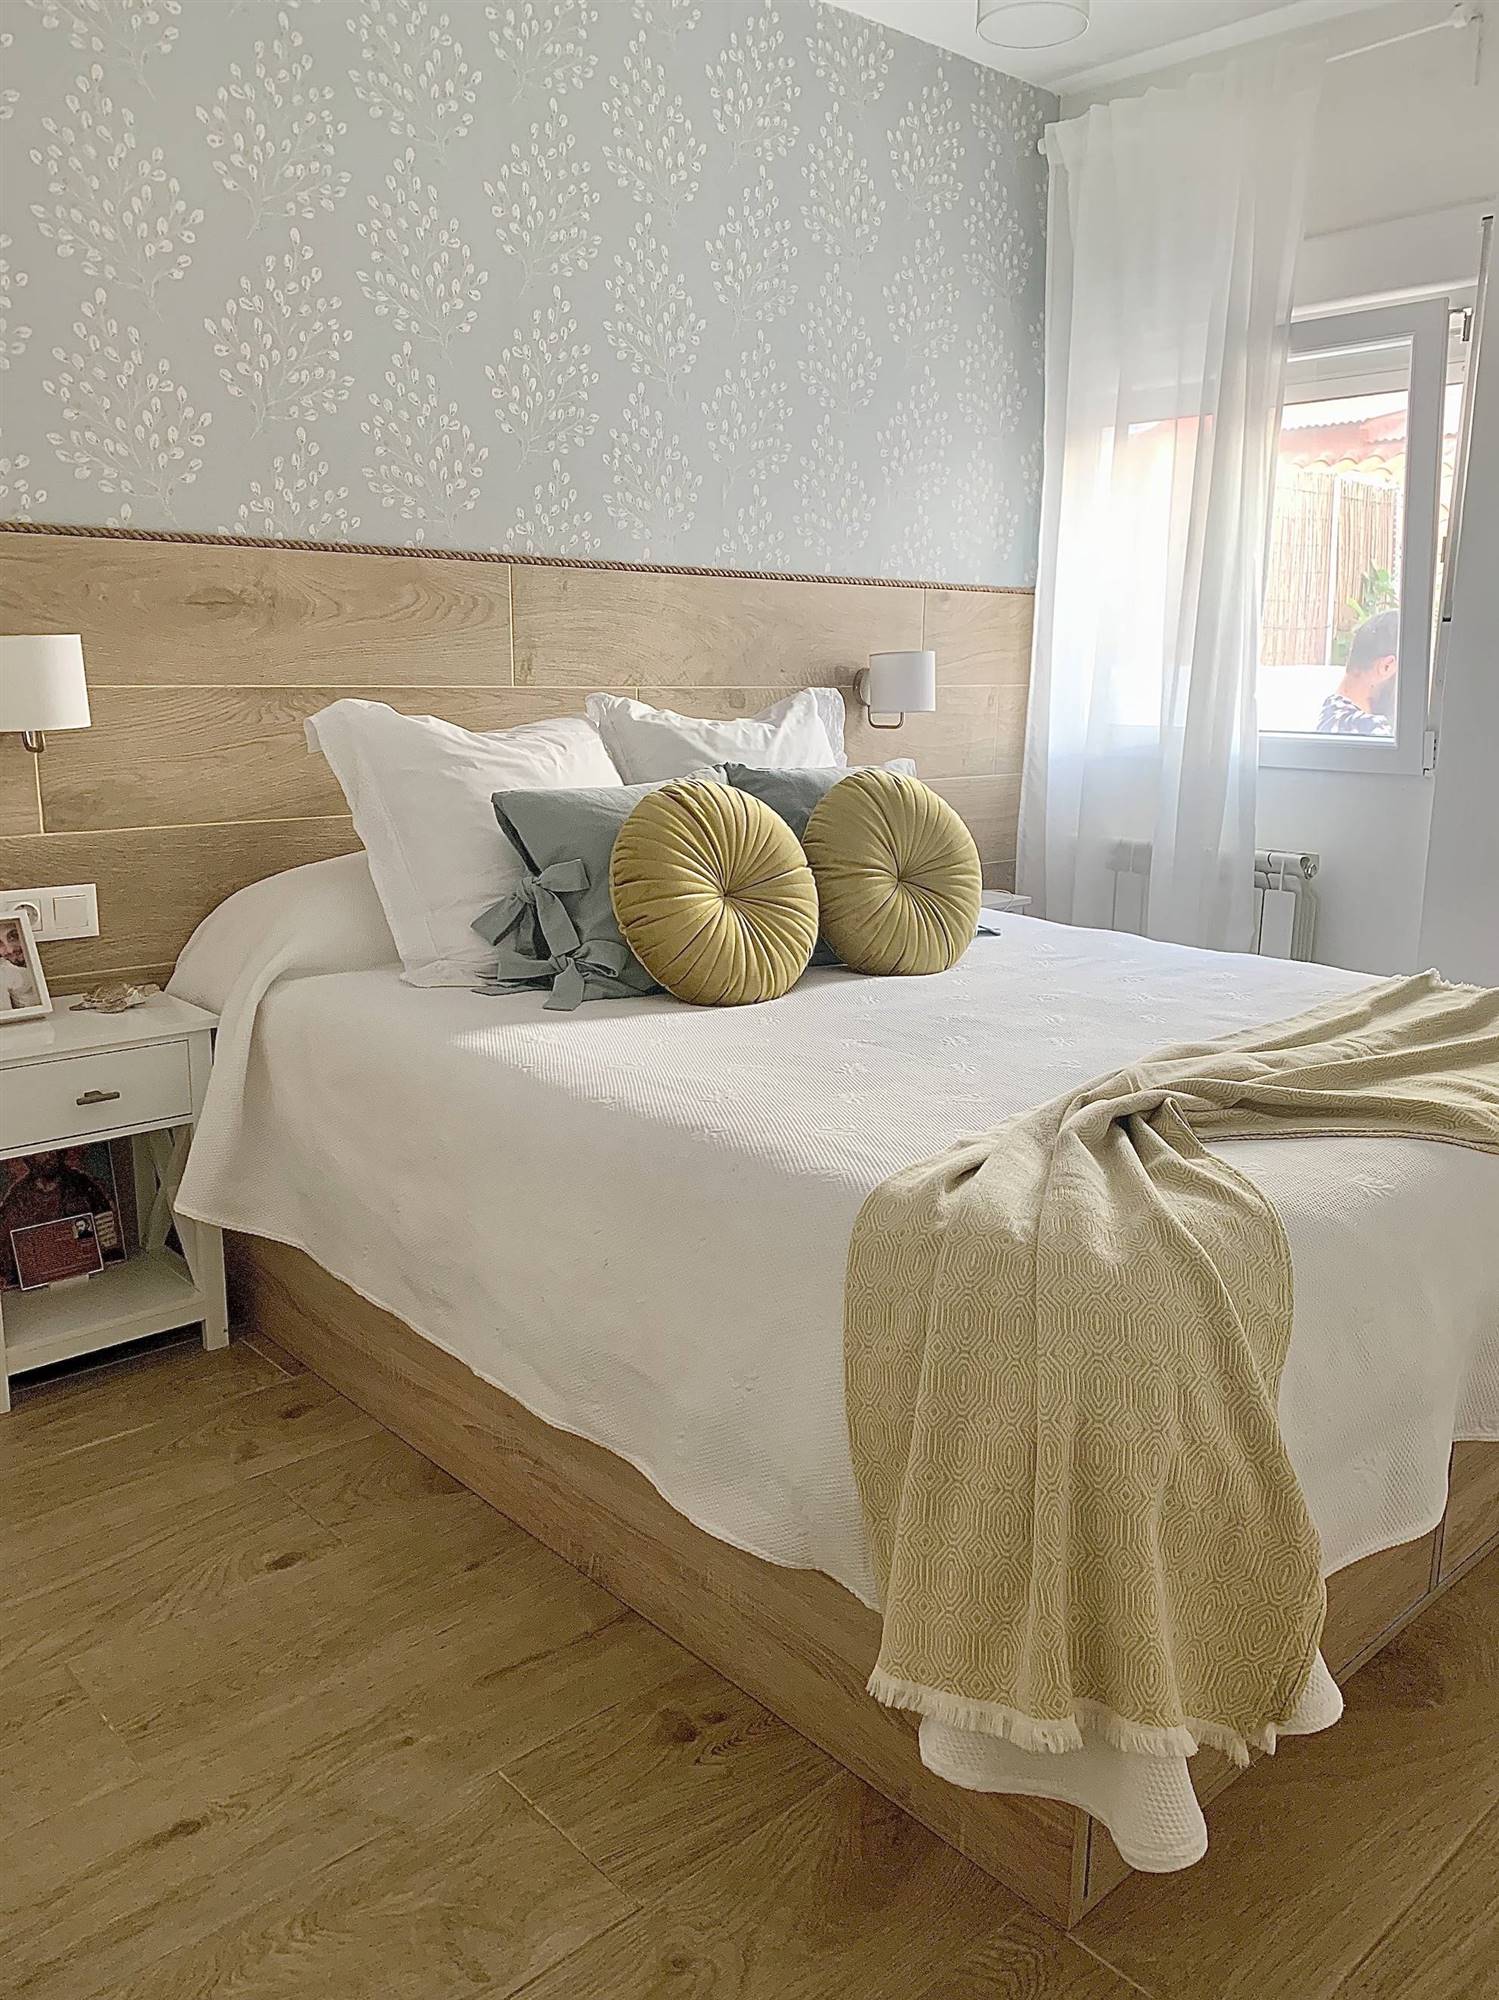 Dormitorio moderno y actual con cabecero de madera y papel pintado con motivos florales.